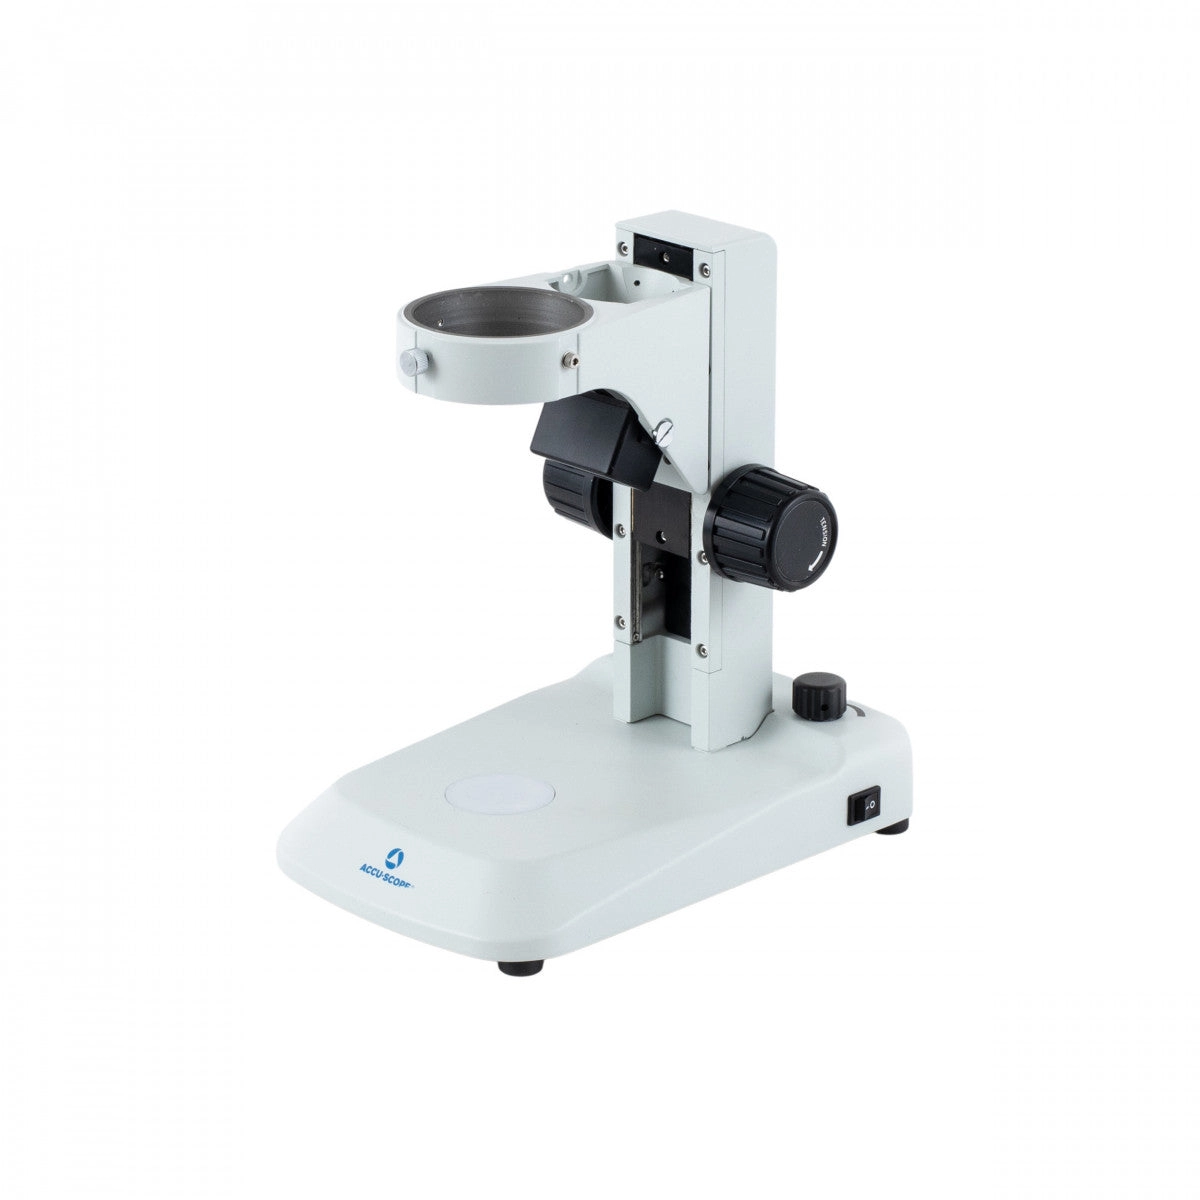 Accu-Scope Coarse Focusing LED Microscope Stand